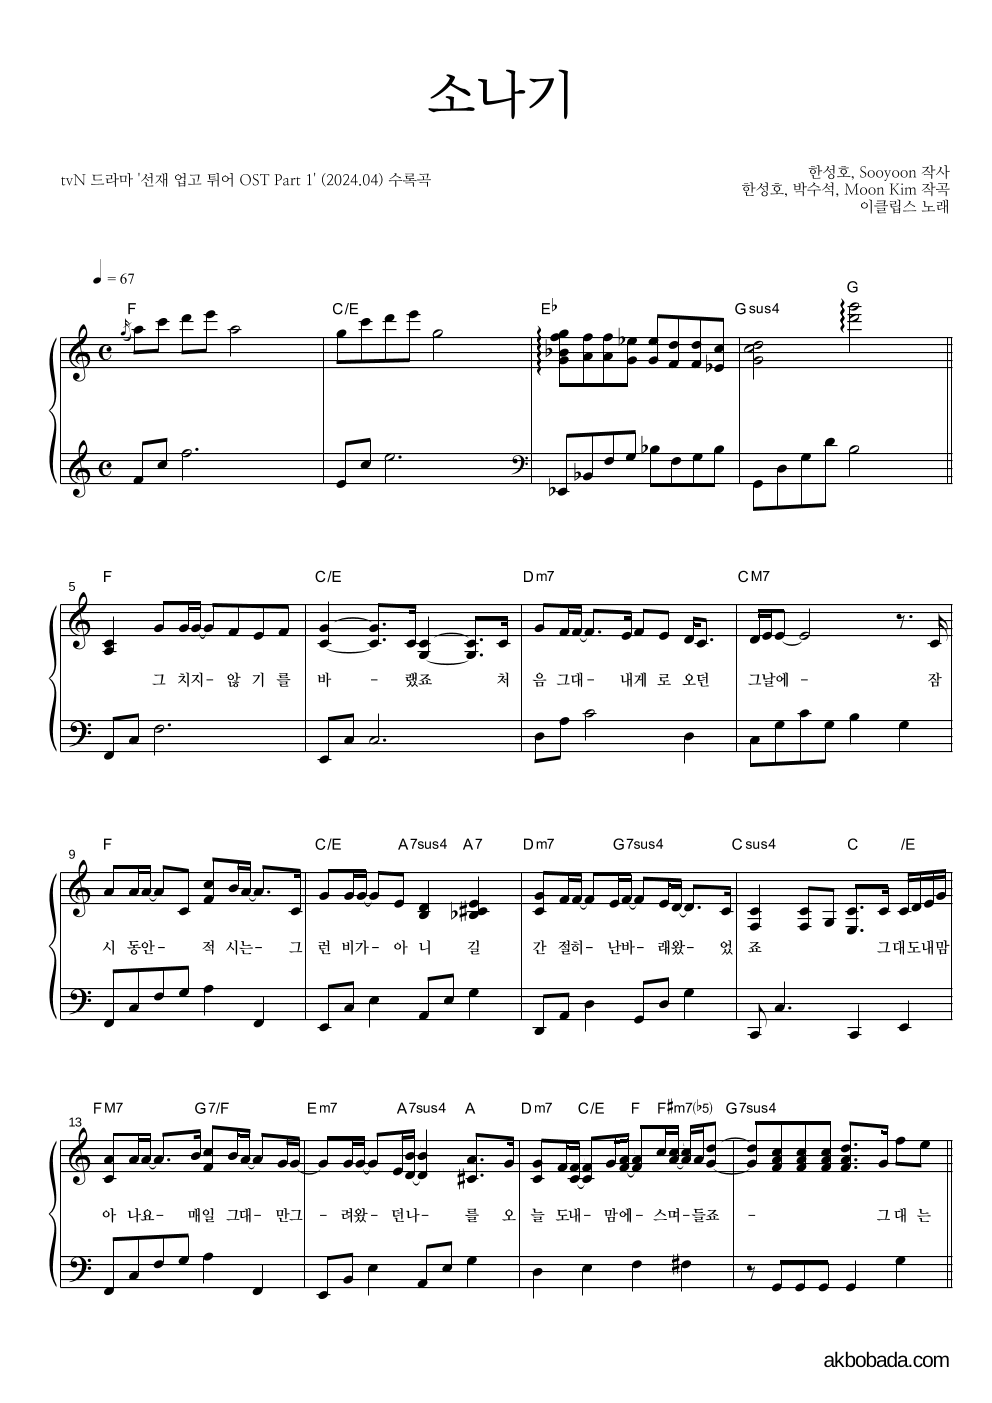 이클립스 - 소나기 피아노 2단 악보 